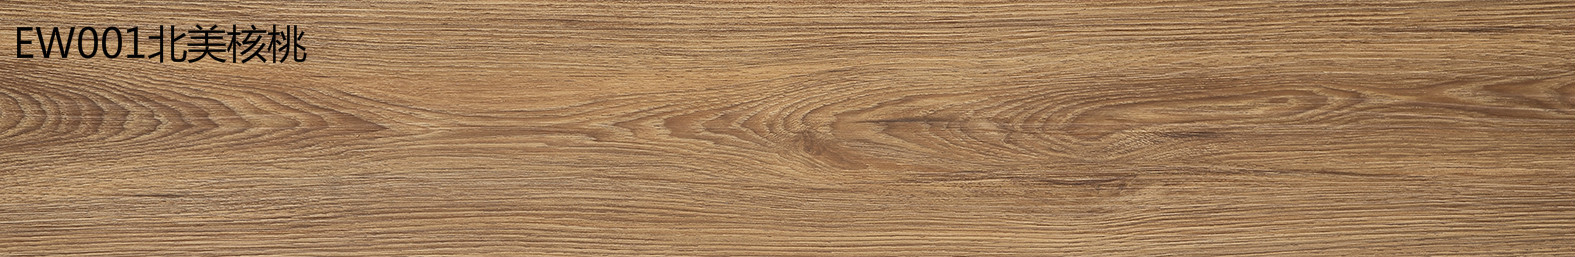 金鼠PVC地板木纹EW001